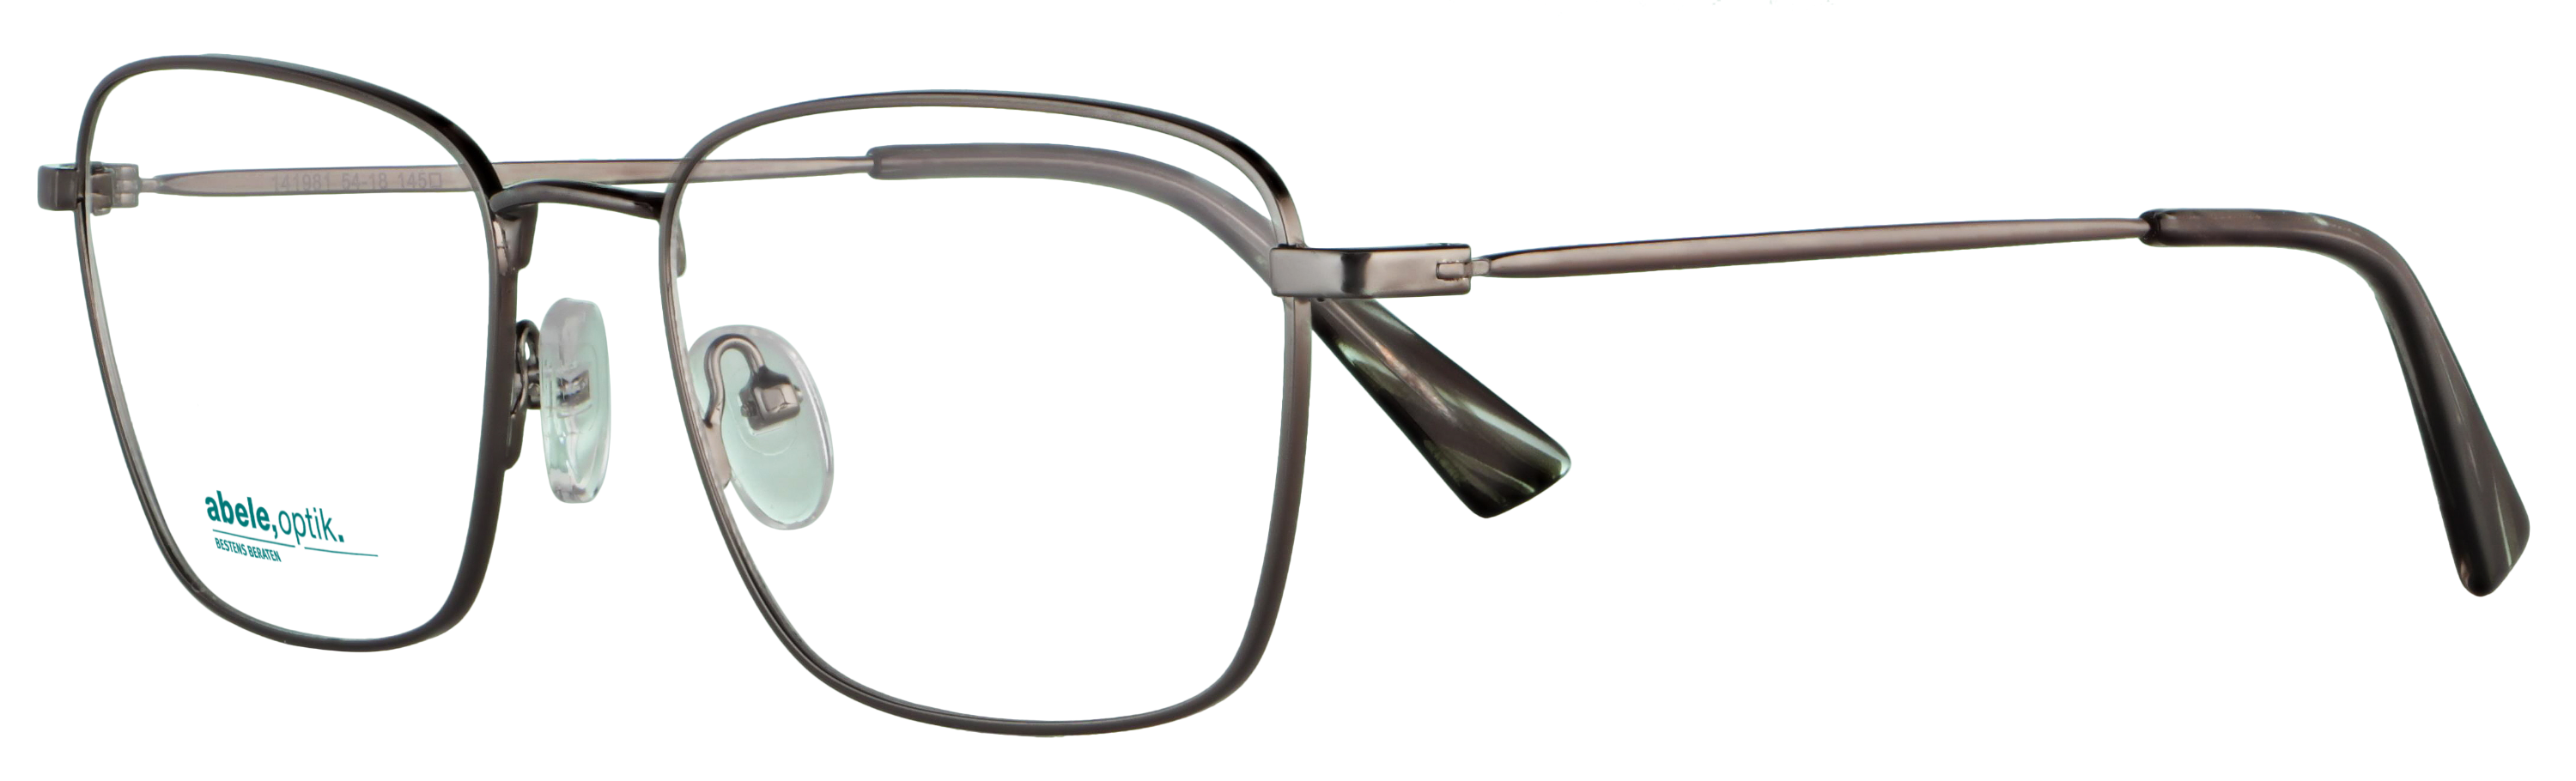 Das Bild zeigt die Korrektionsbrille 141981 von der Marke Abele Optik in gun.